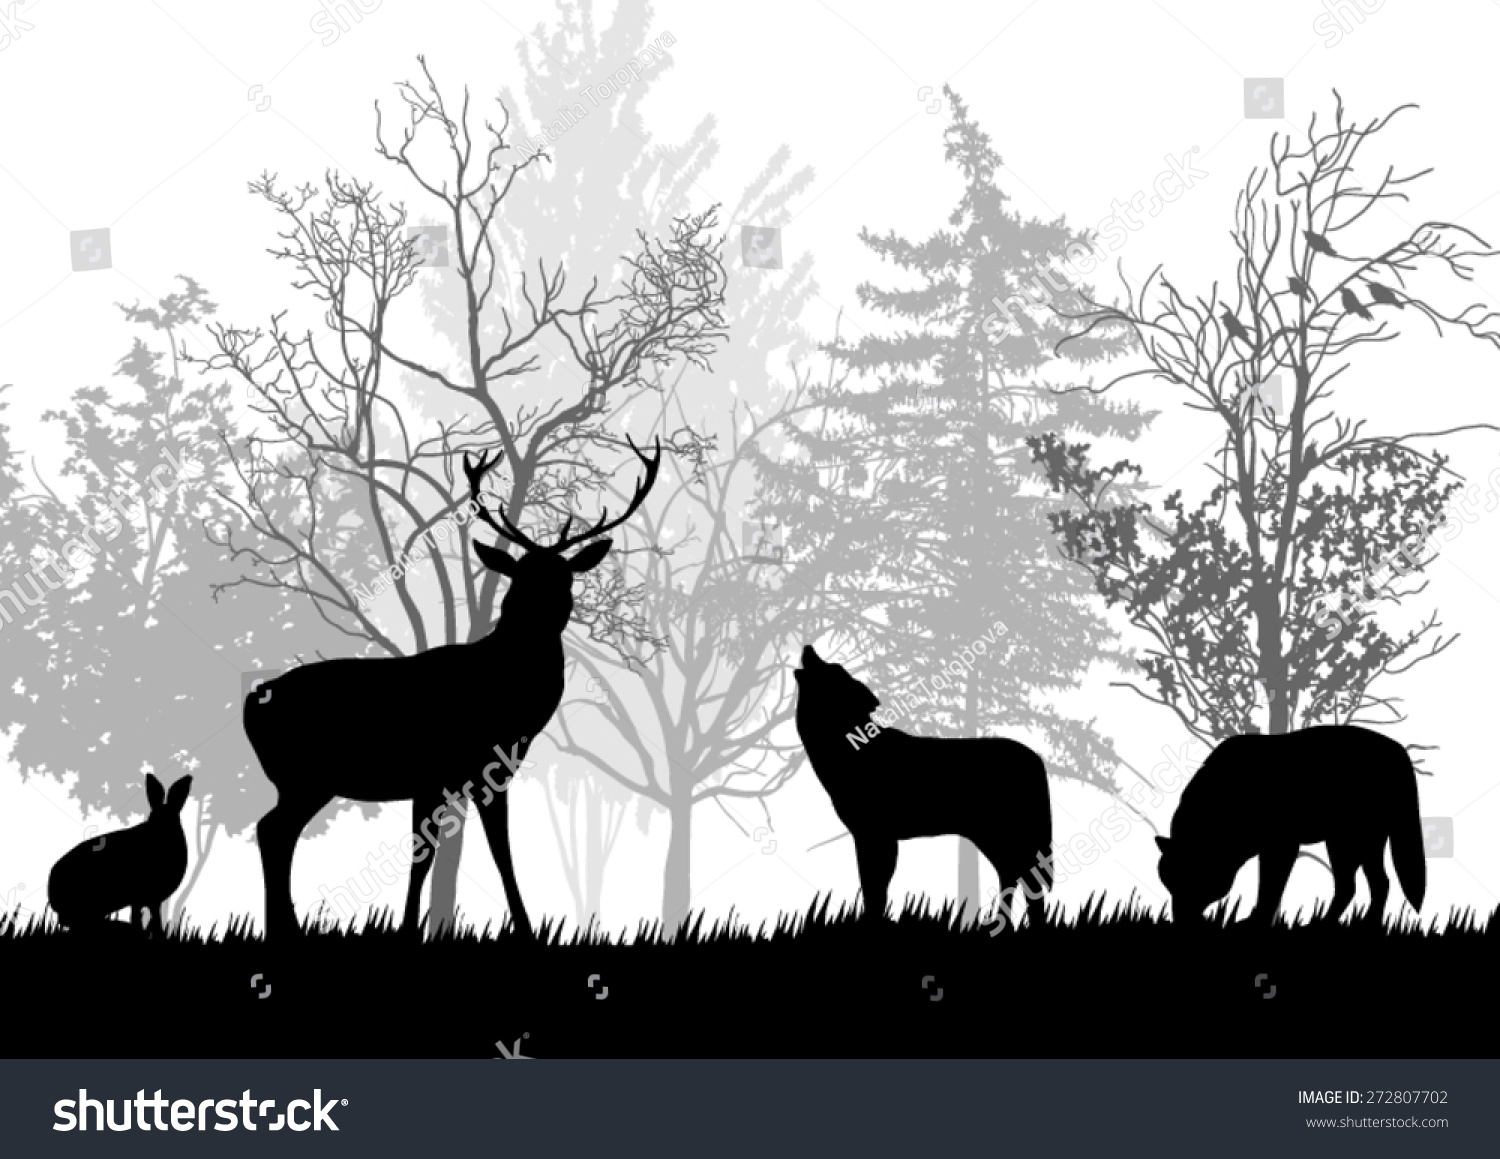 wild-animals-forest-silhouettes-vector-de-stock-libre-de-regal-as